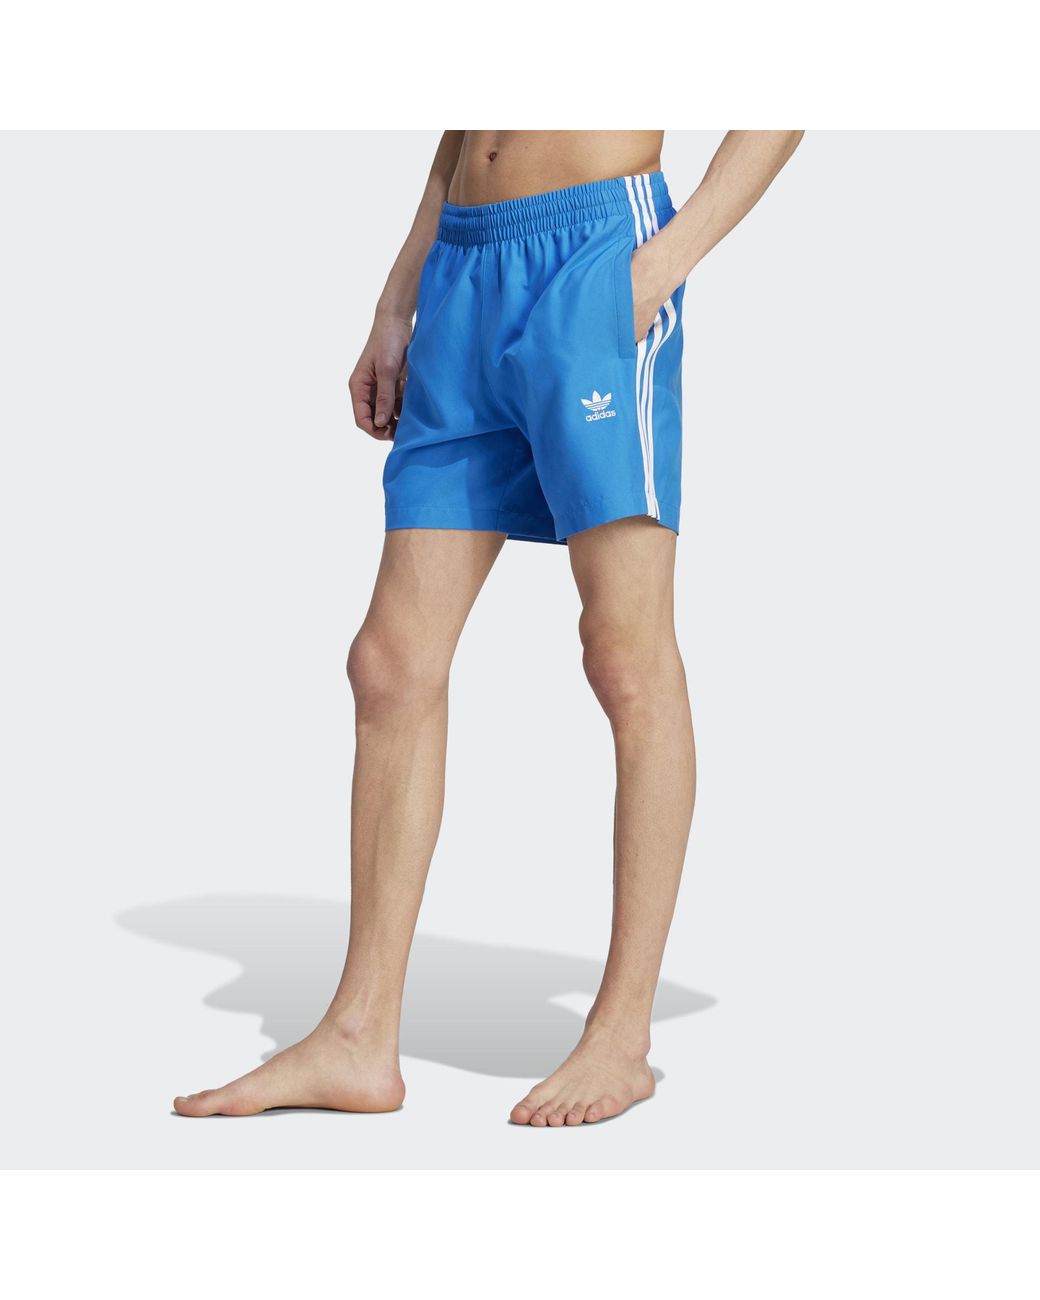 adidas Originals Adicolor 3-stripes Swim Shorts in Blue for Lyst UK